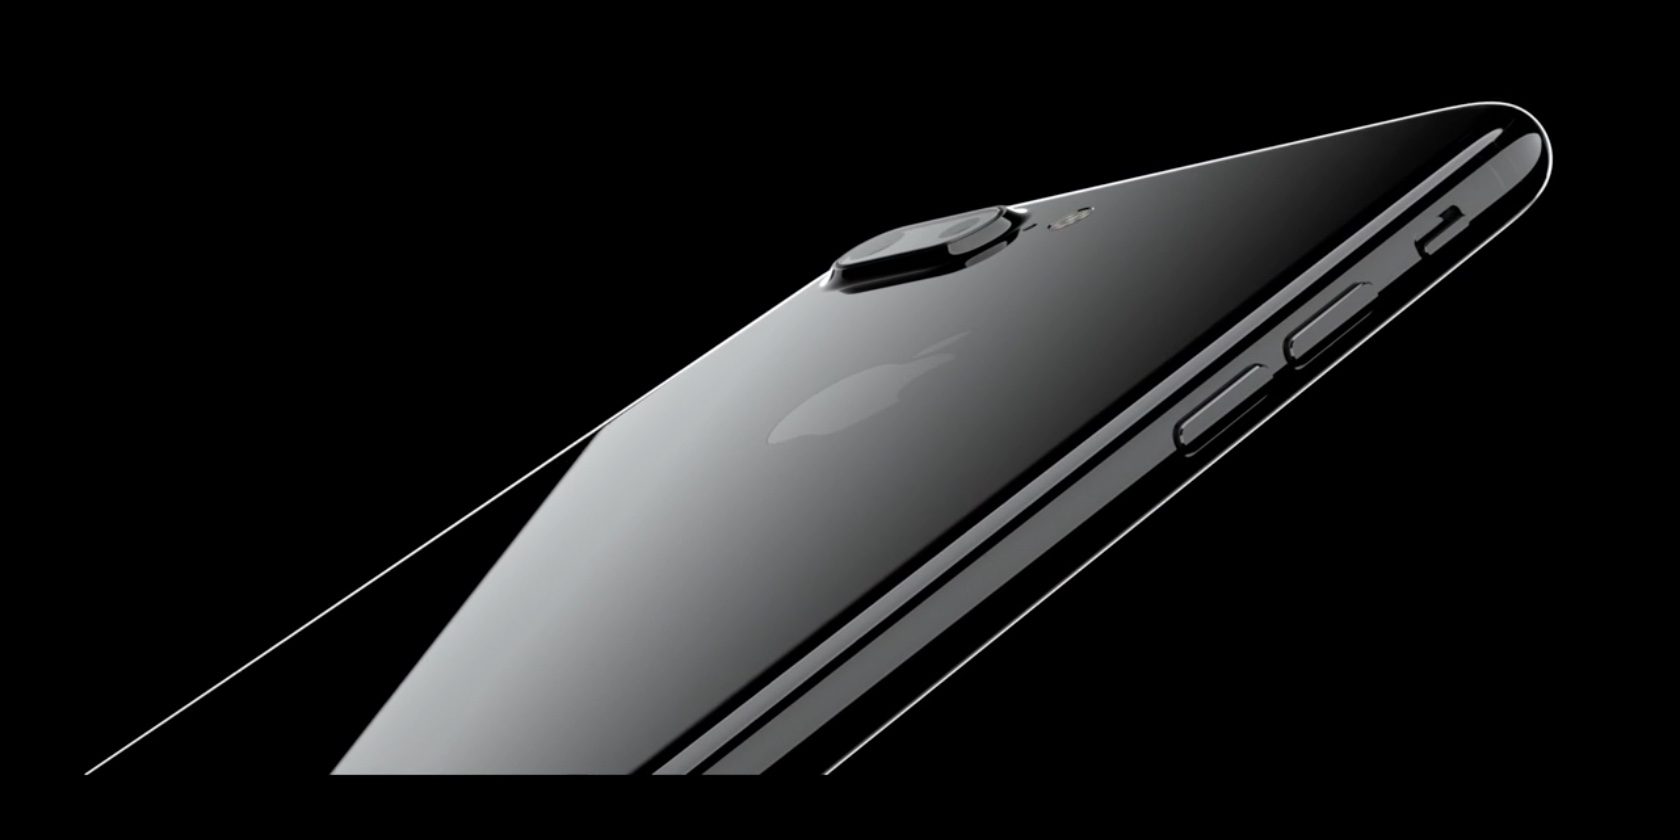 นักวิเคราะห์ชี้ความต้องการ iPhone 7 Plus สูงเกินคาด แต่ยอดขายยังไม่เท่า iPhone 6s